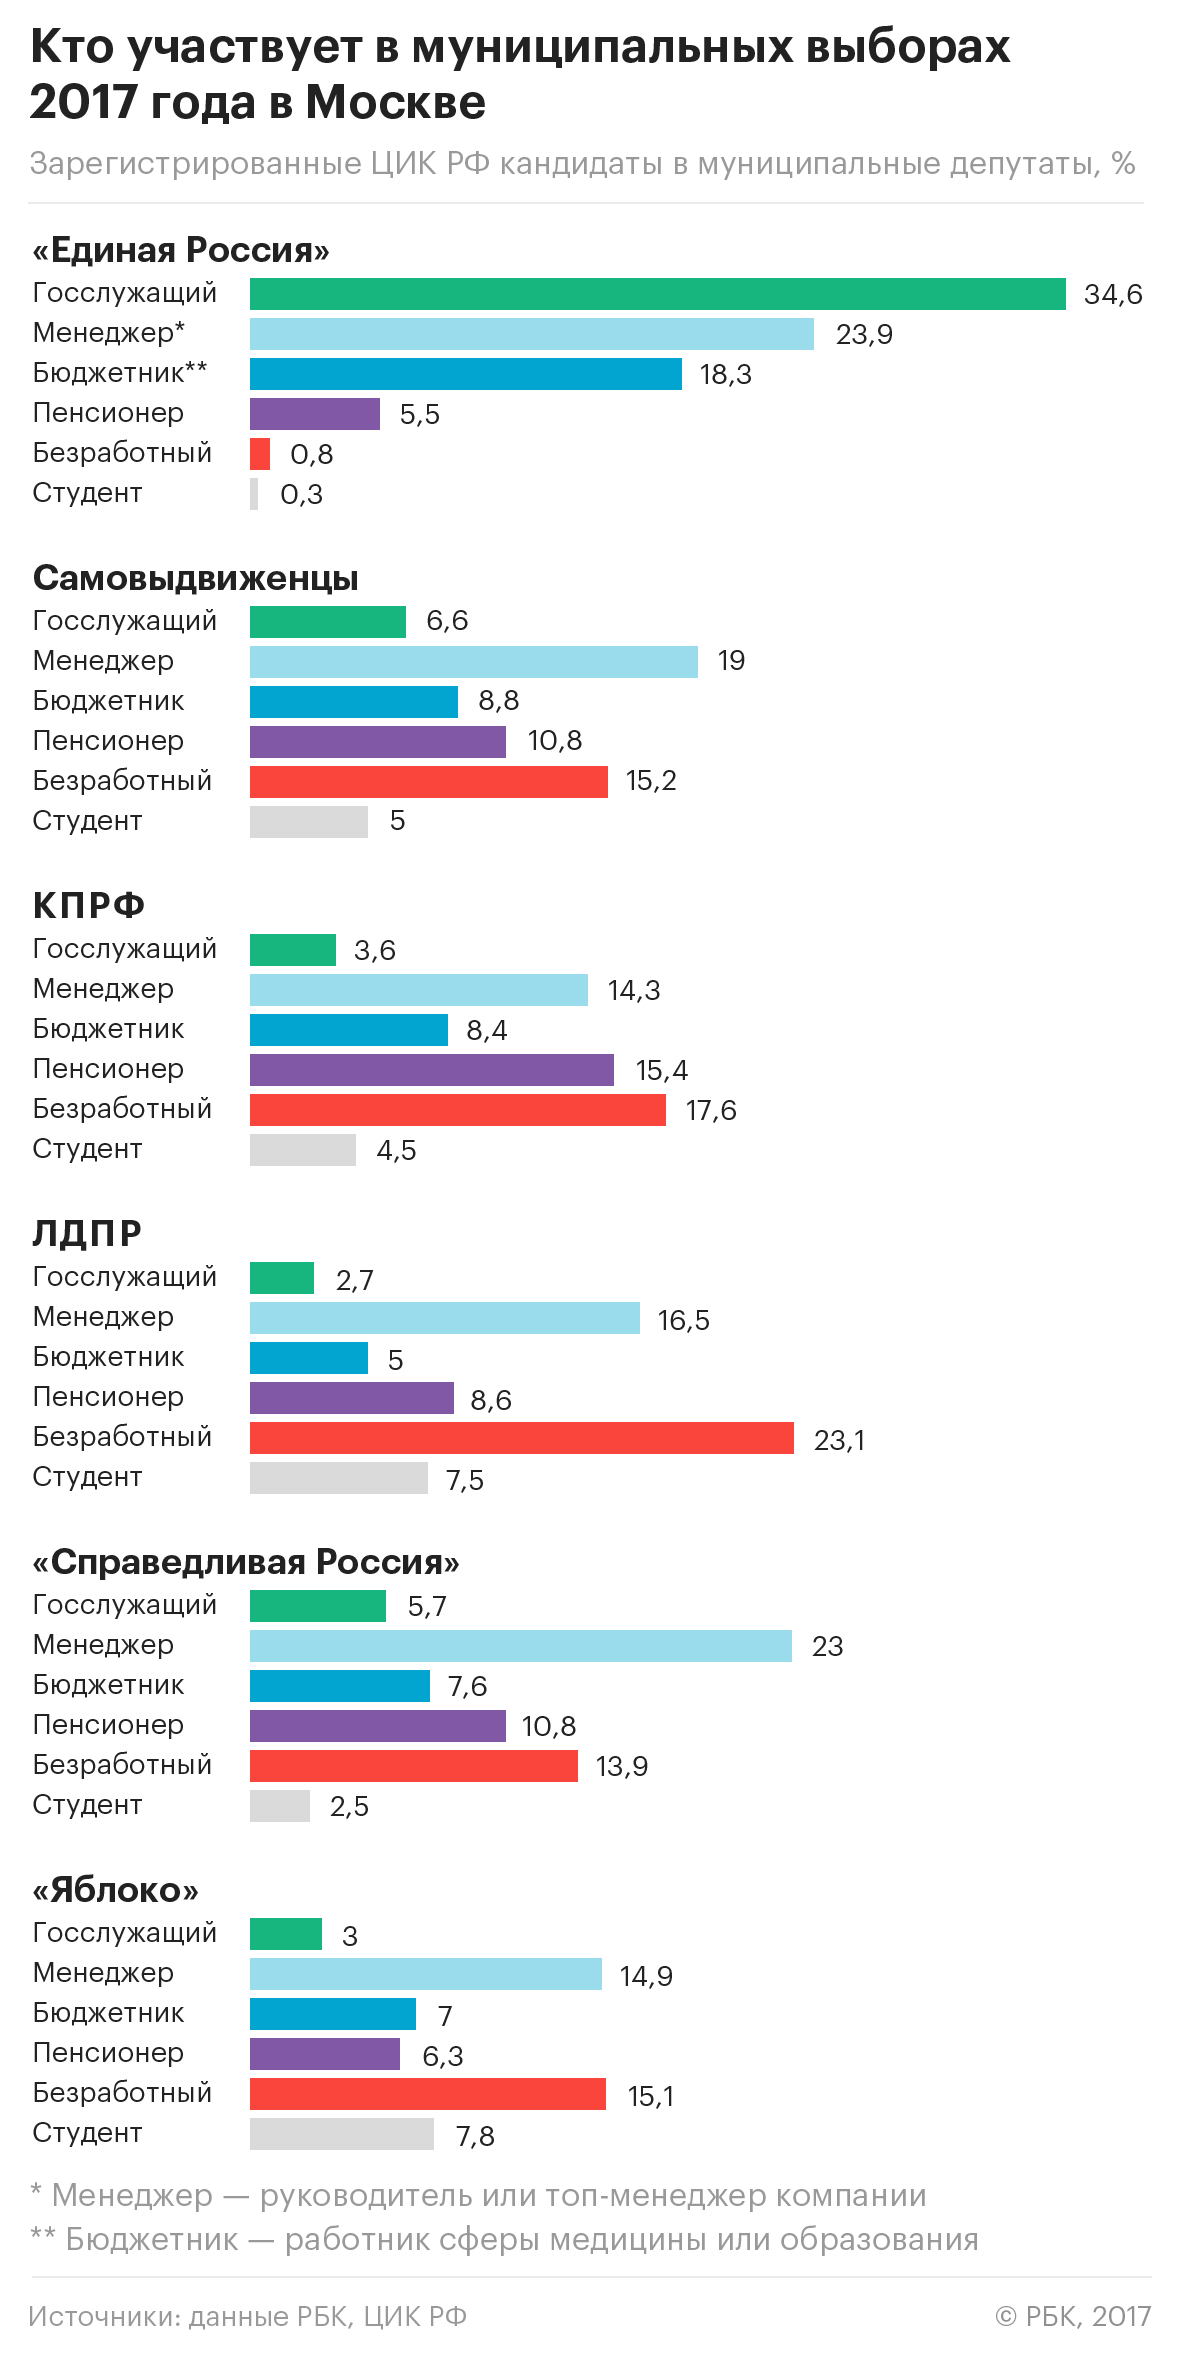 Исследование РБК: кто решил пойти в муниципальные депутаты в Москве